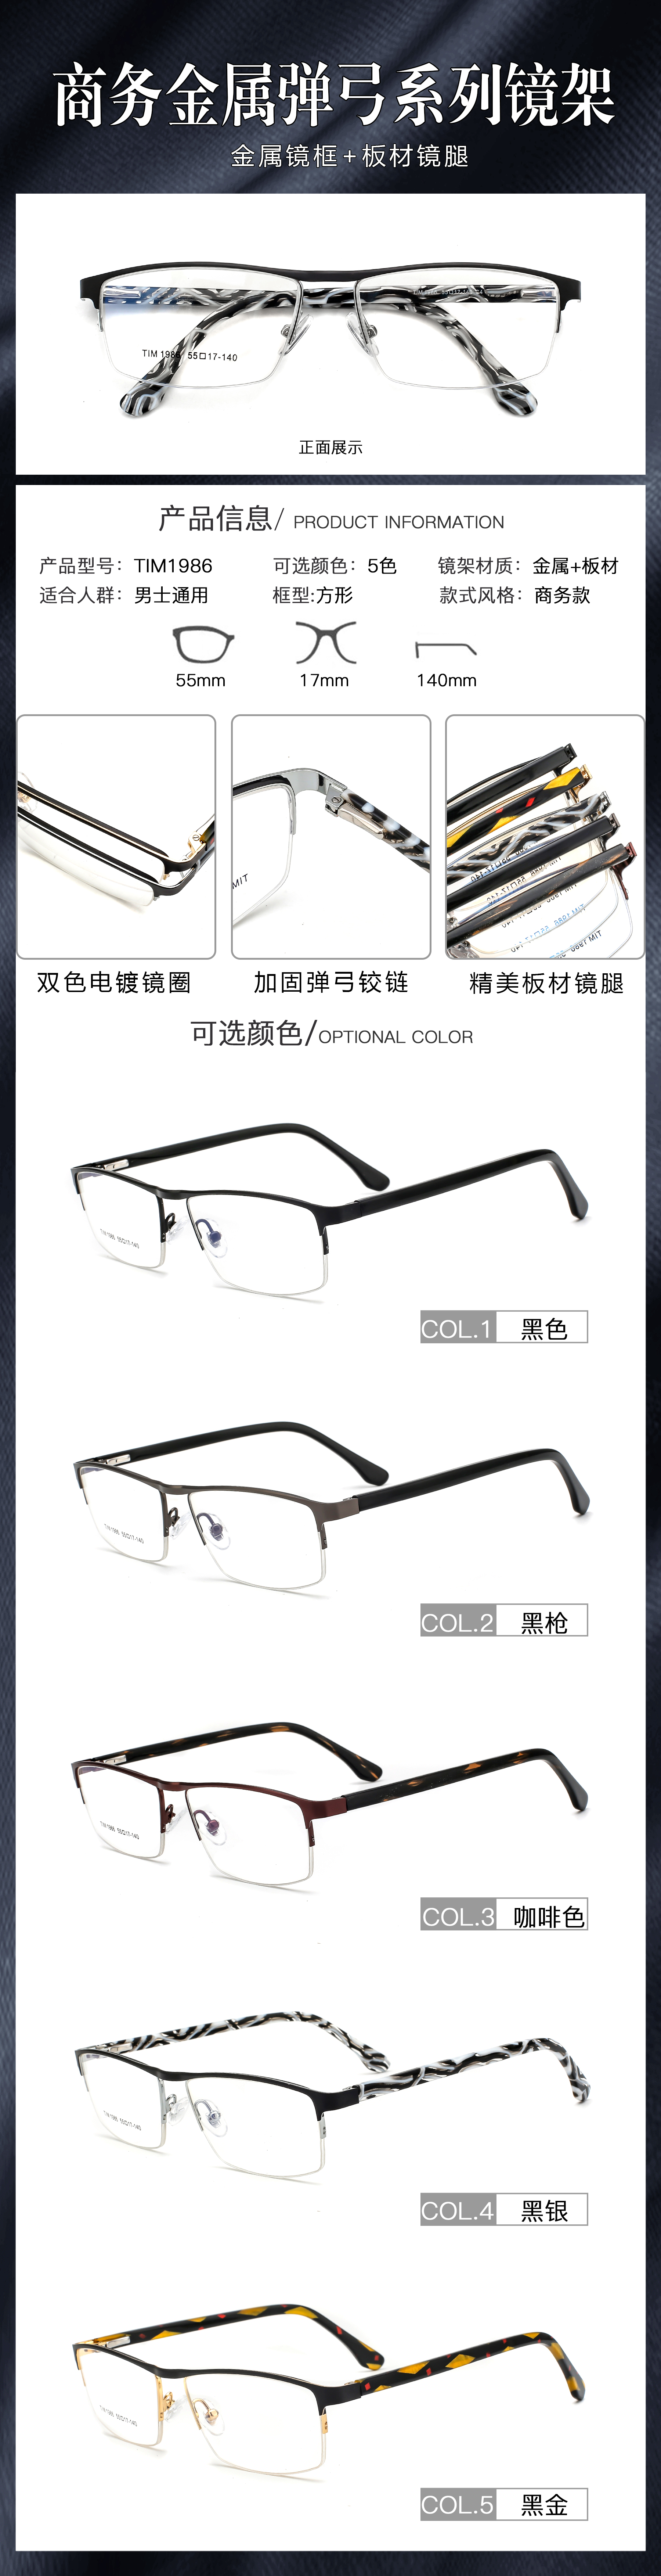 biz glasses frames